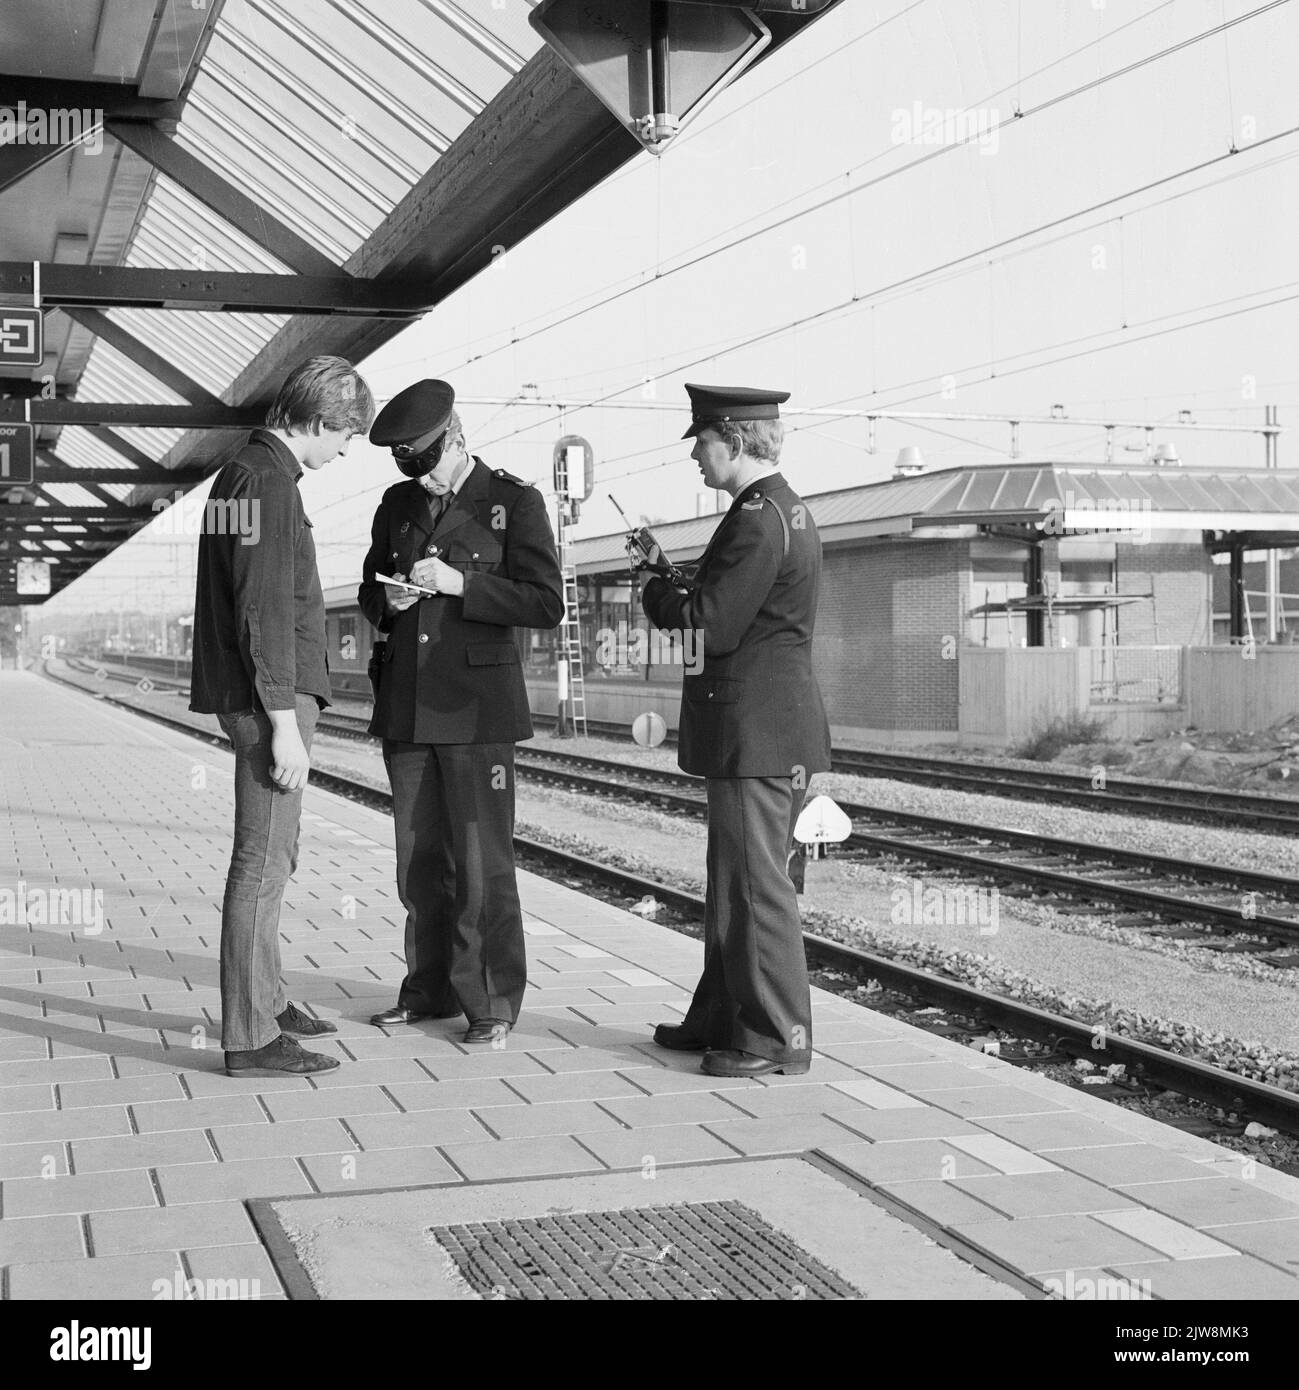 Immagine di due agenti della polizia ferroviaria che verbalizzare un giovane sulla piattaforma della stazione N.S. Ede-Wageningen a Ede. Foto Stock